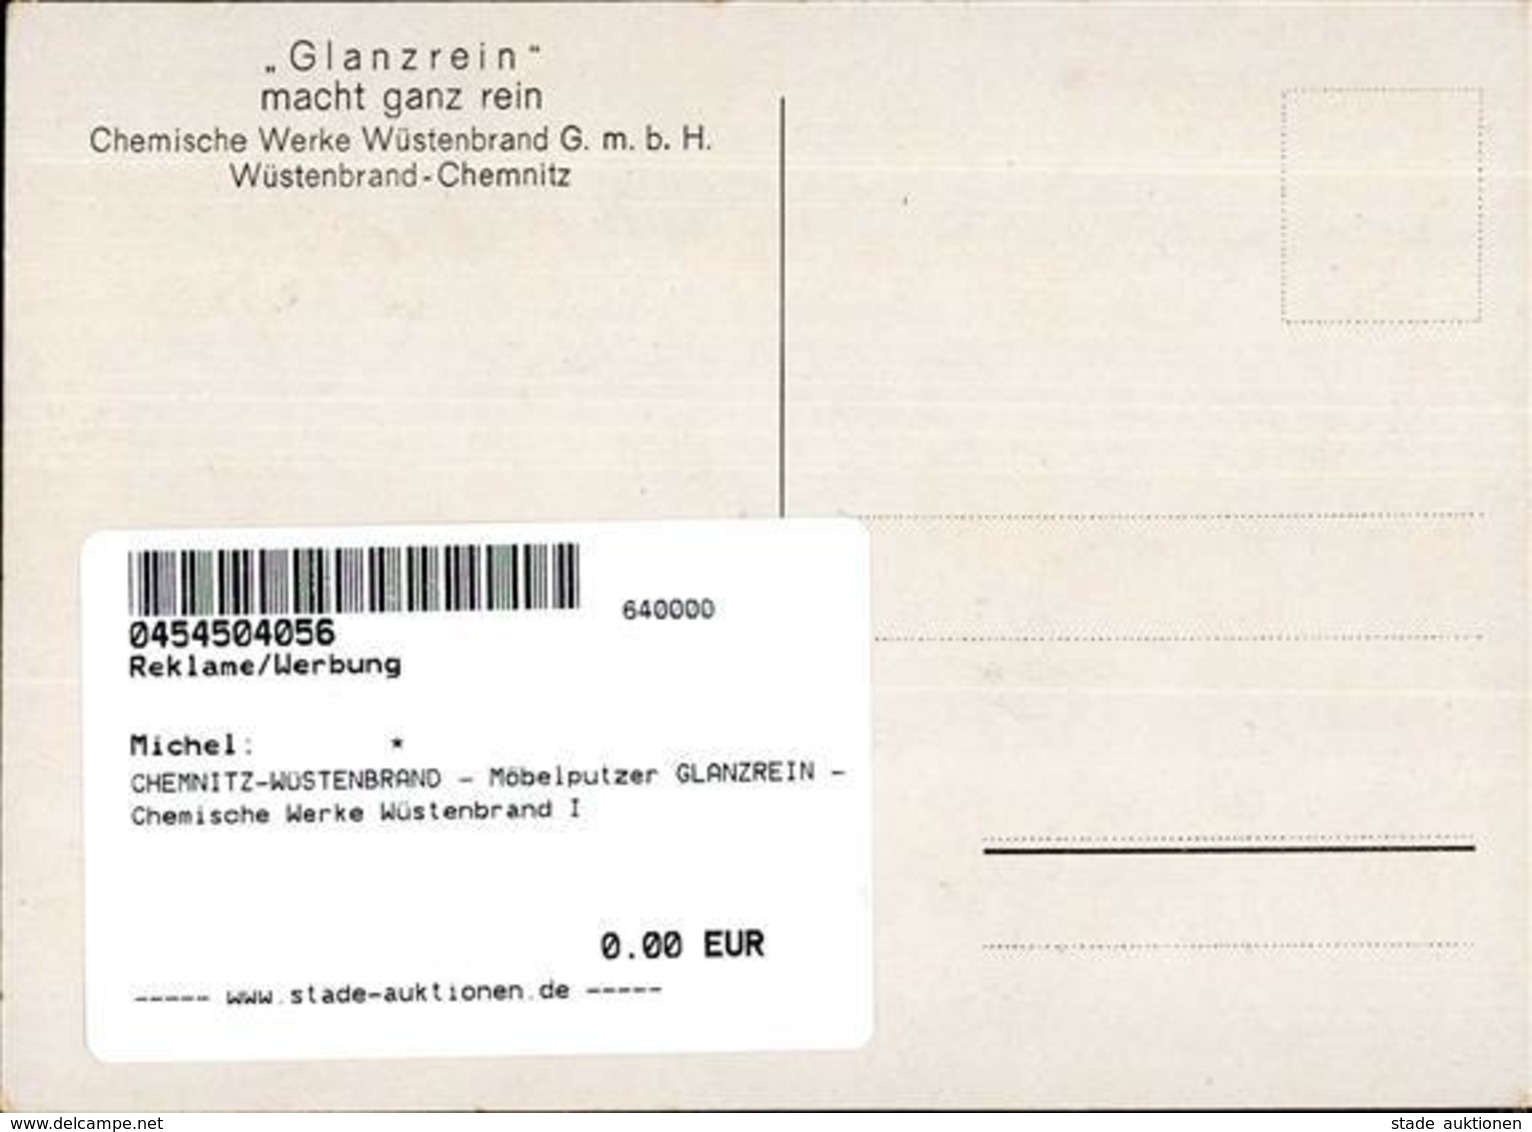 CHEMNITZ-WÜSTENBRAND - Möbelputzer GLANZREIN - Chemische Werke Wüstenbrand I - Werbepostkarten